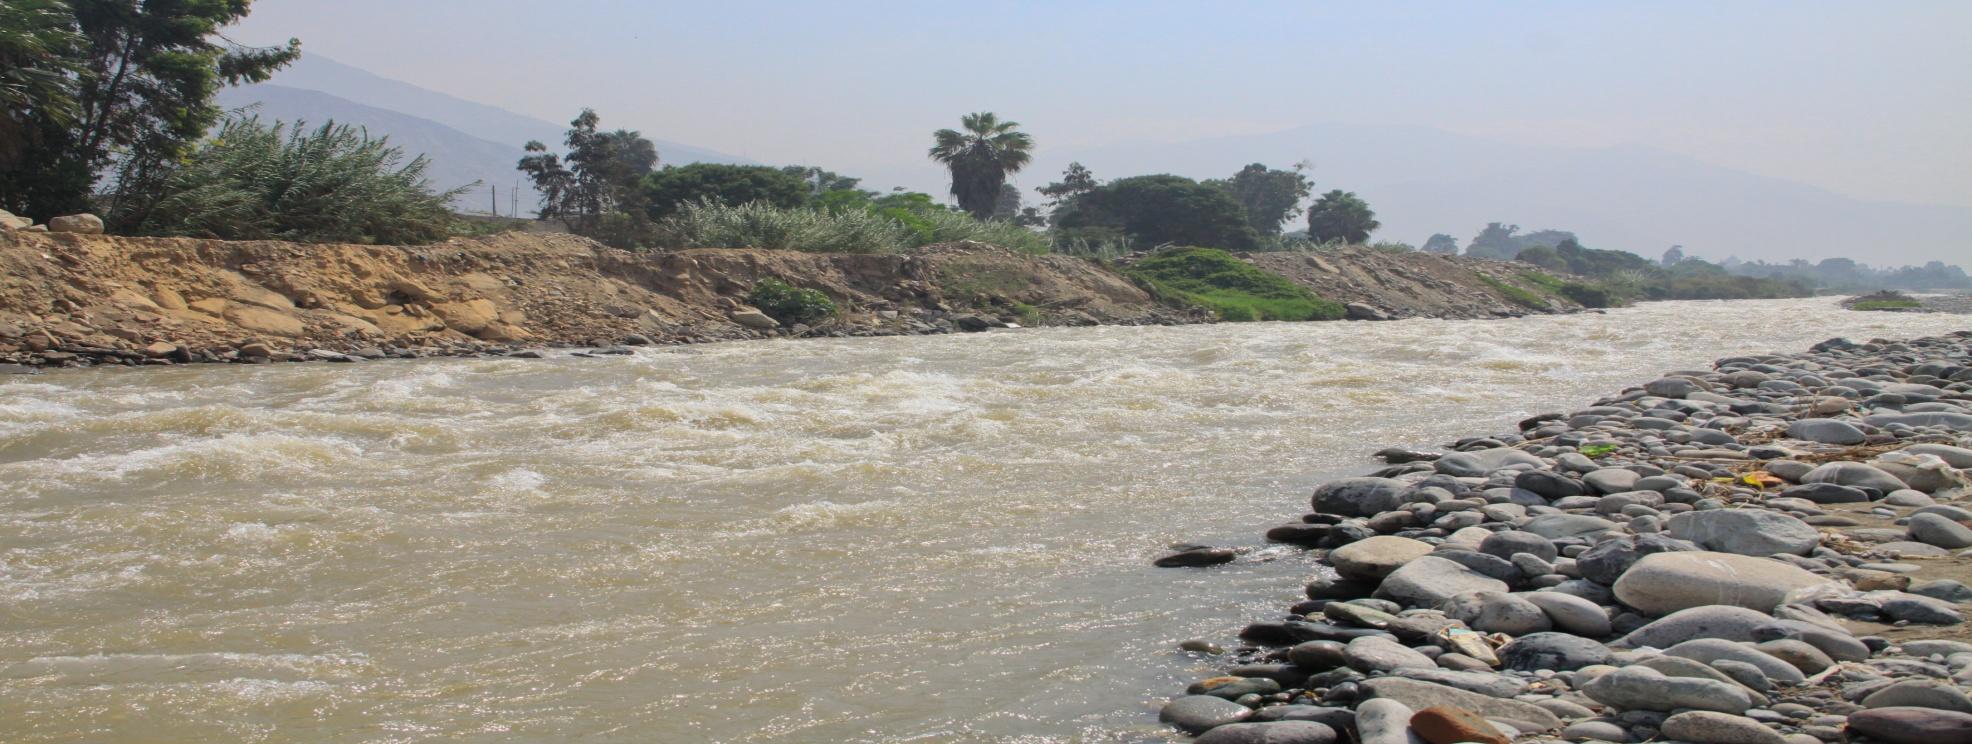 El grito del río Rímac ante la gran amenaza de la contaminación El río Rímac abastece a la mayoría de la población limeña y es por este motivo que la contaminación de